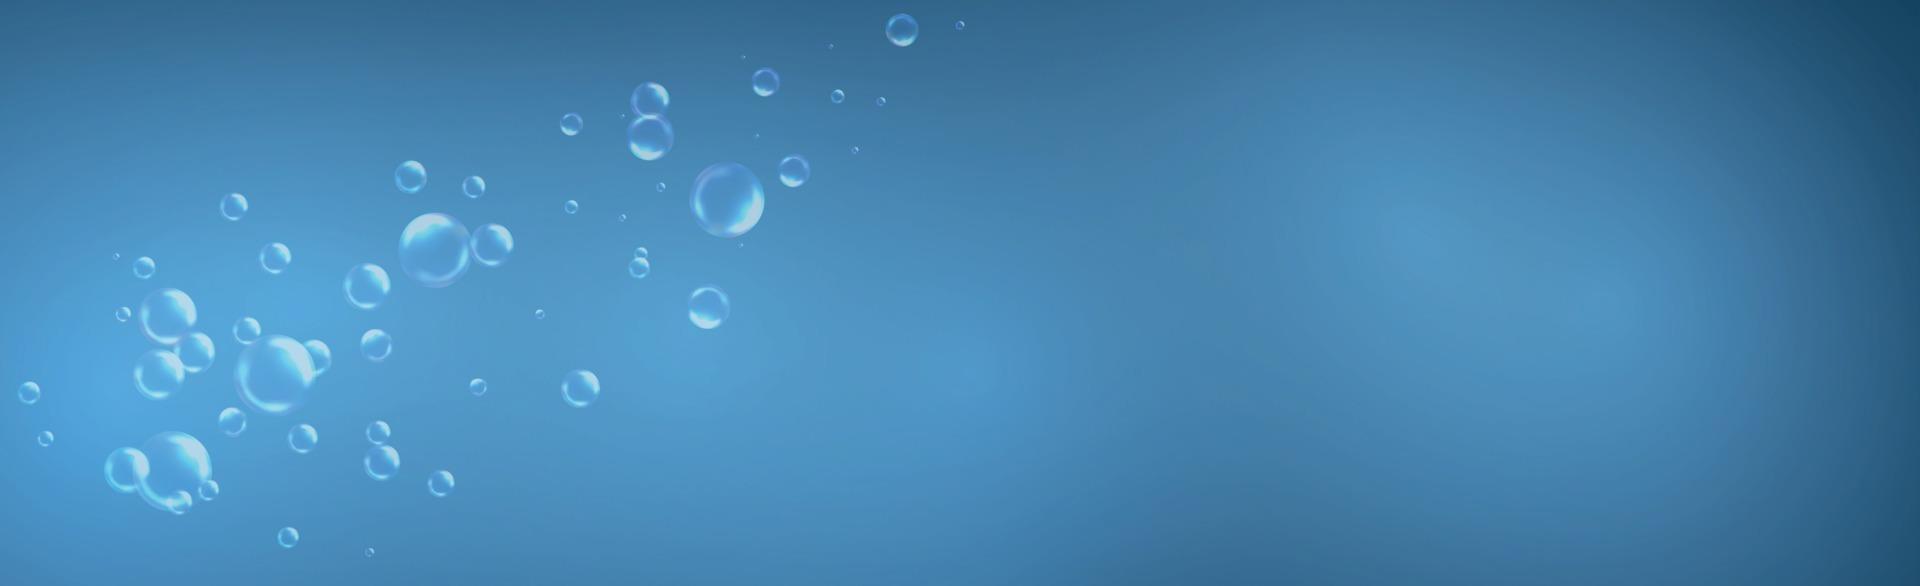 Luftblasen unterschiedlicher Größe auf hellem Hintergrund vektor